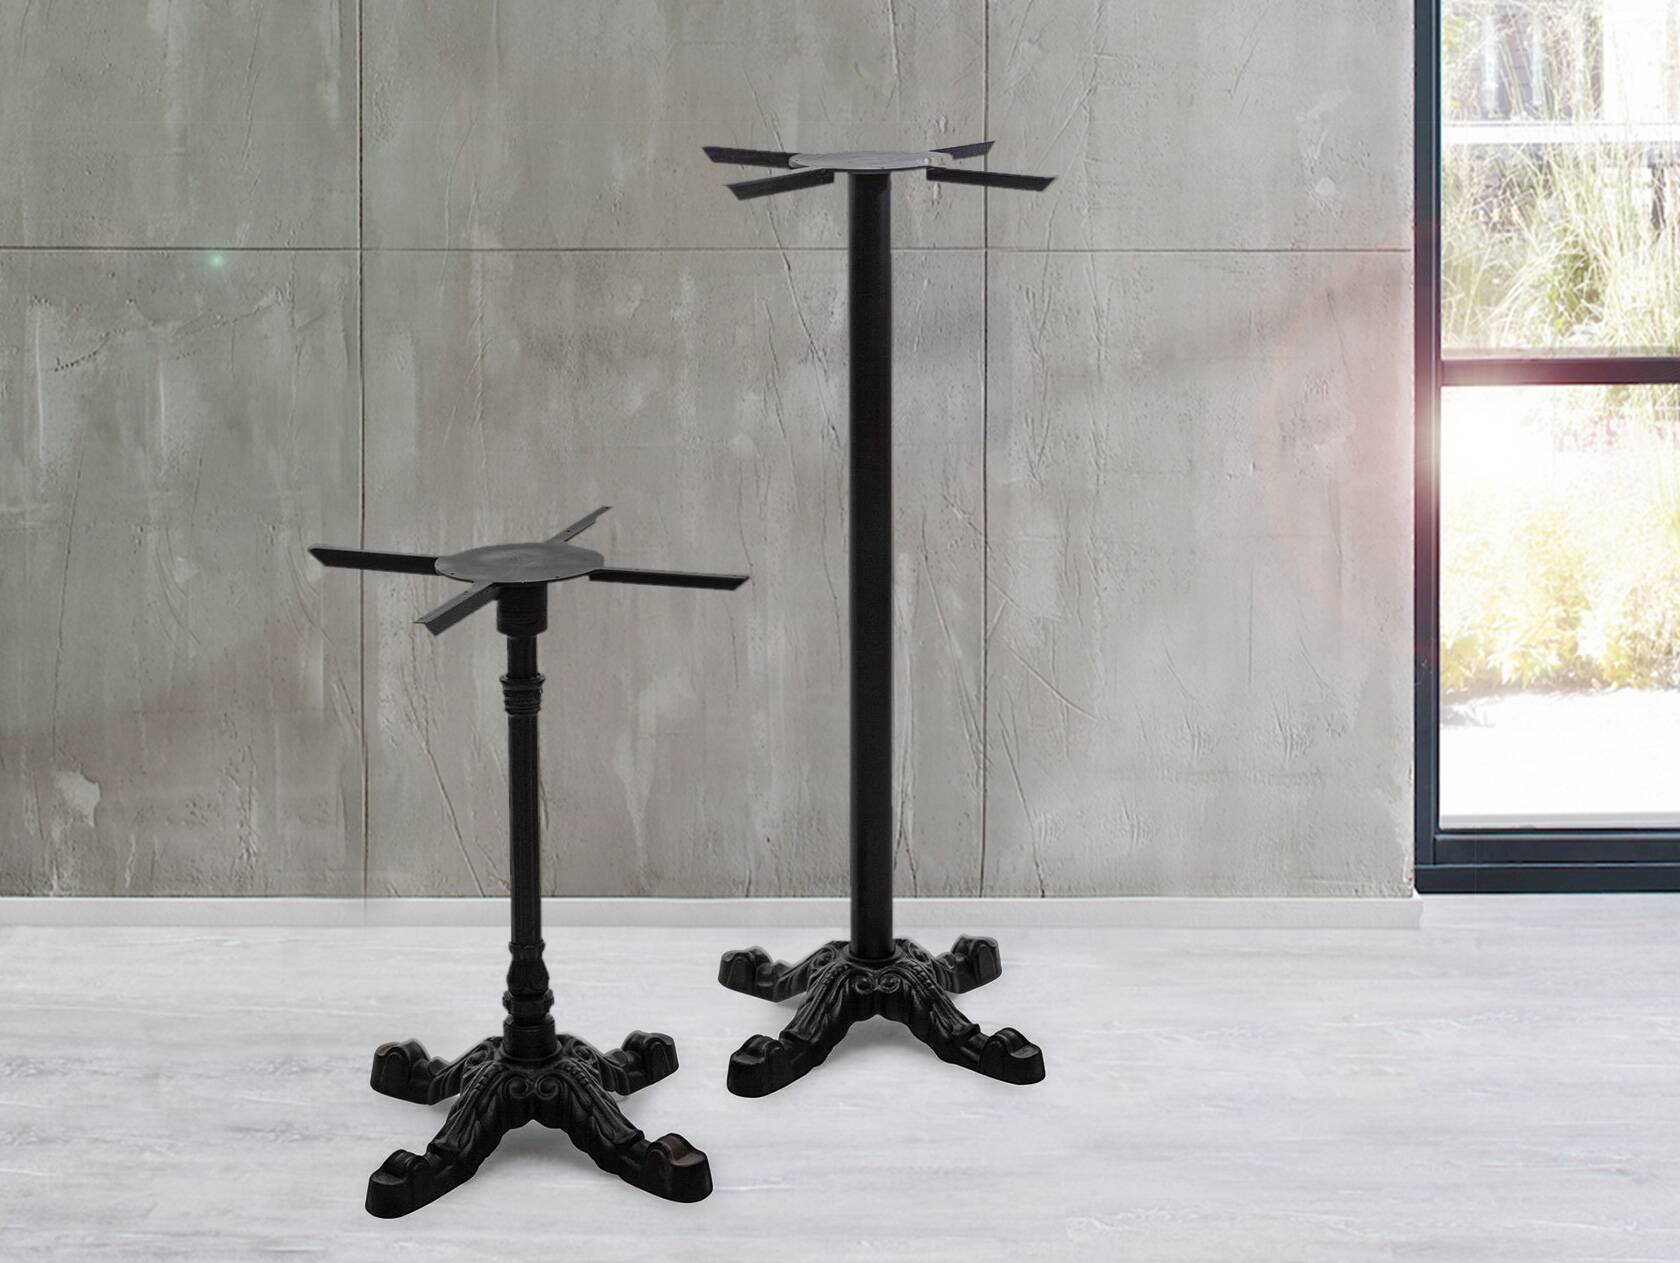 Tischgestell für Bartisch, Material Metall, schwarz lackiert, Höhe: 118 cm 